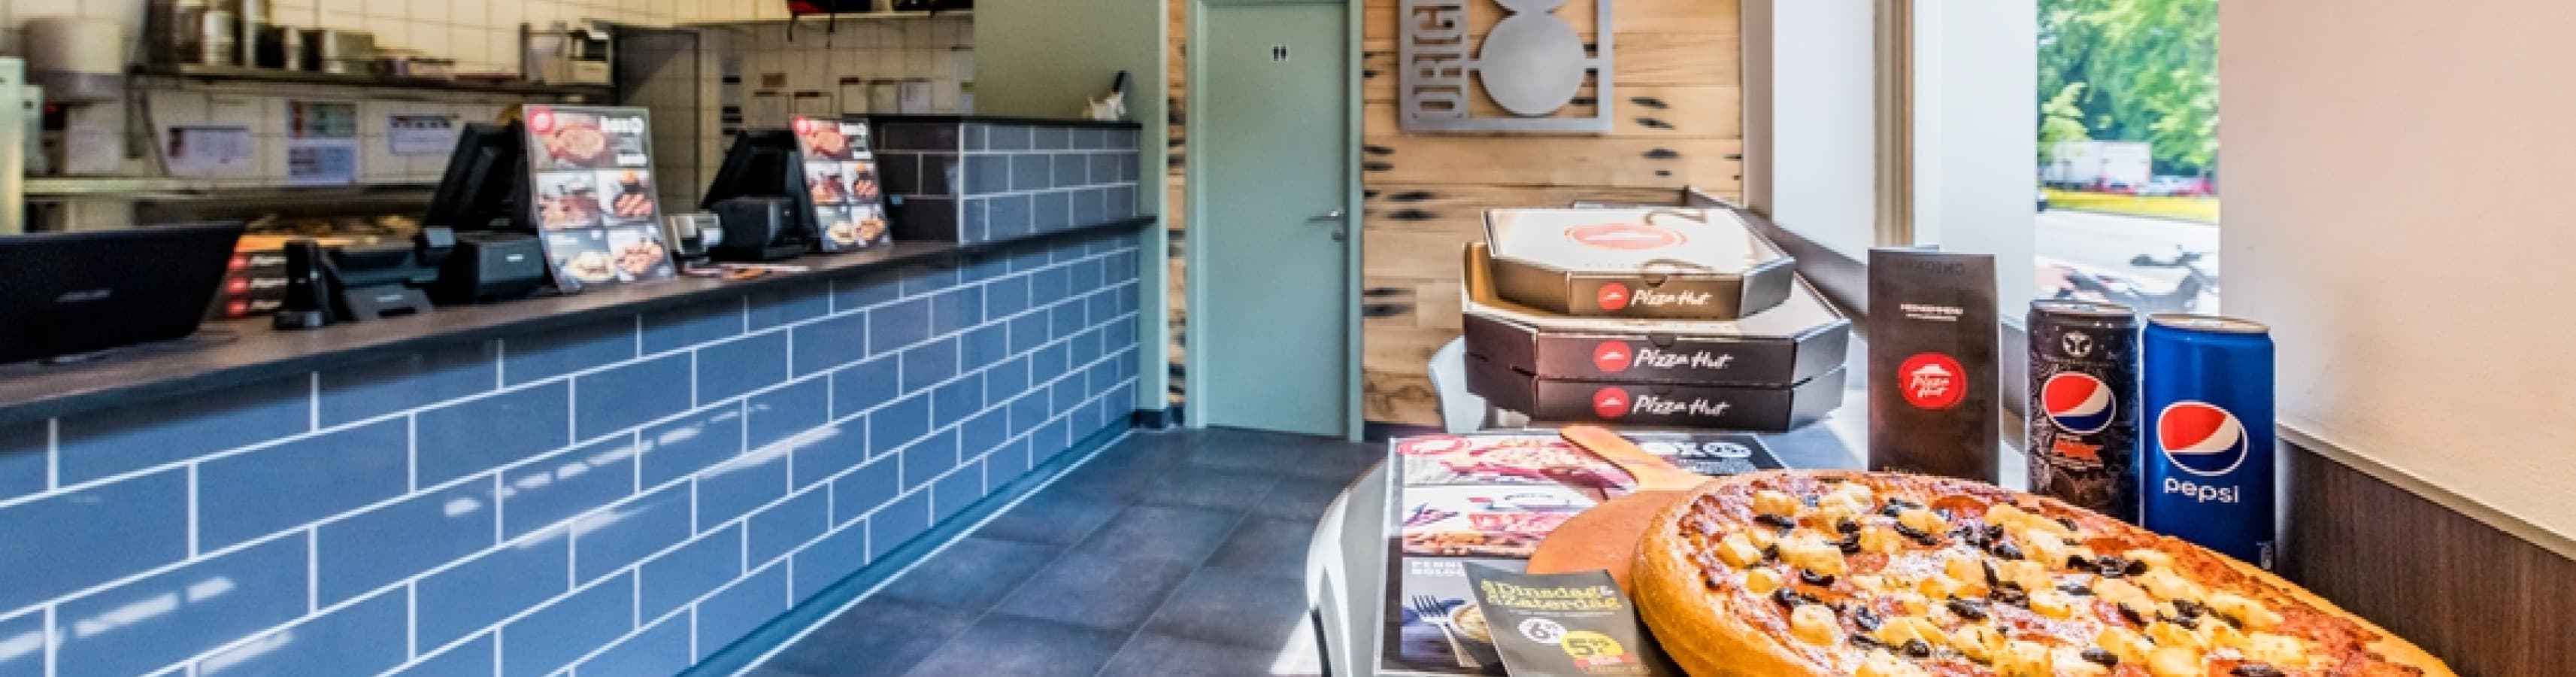 Pizza Hut Delivery Gent Heuvelpoort